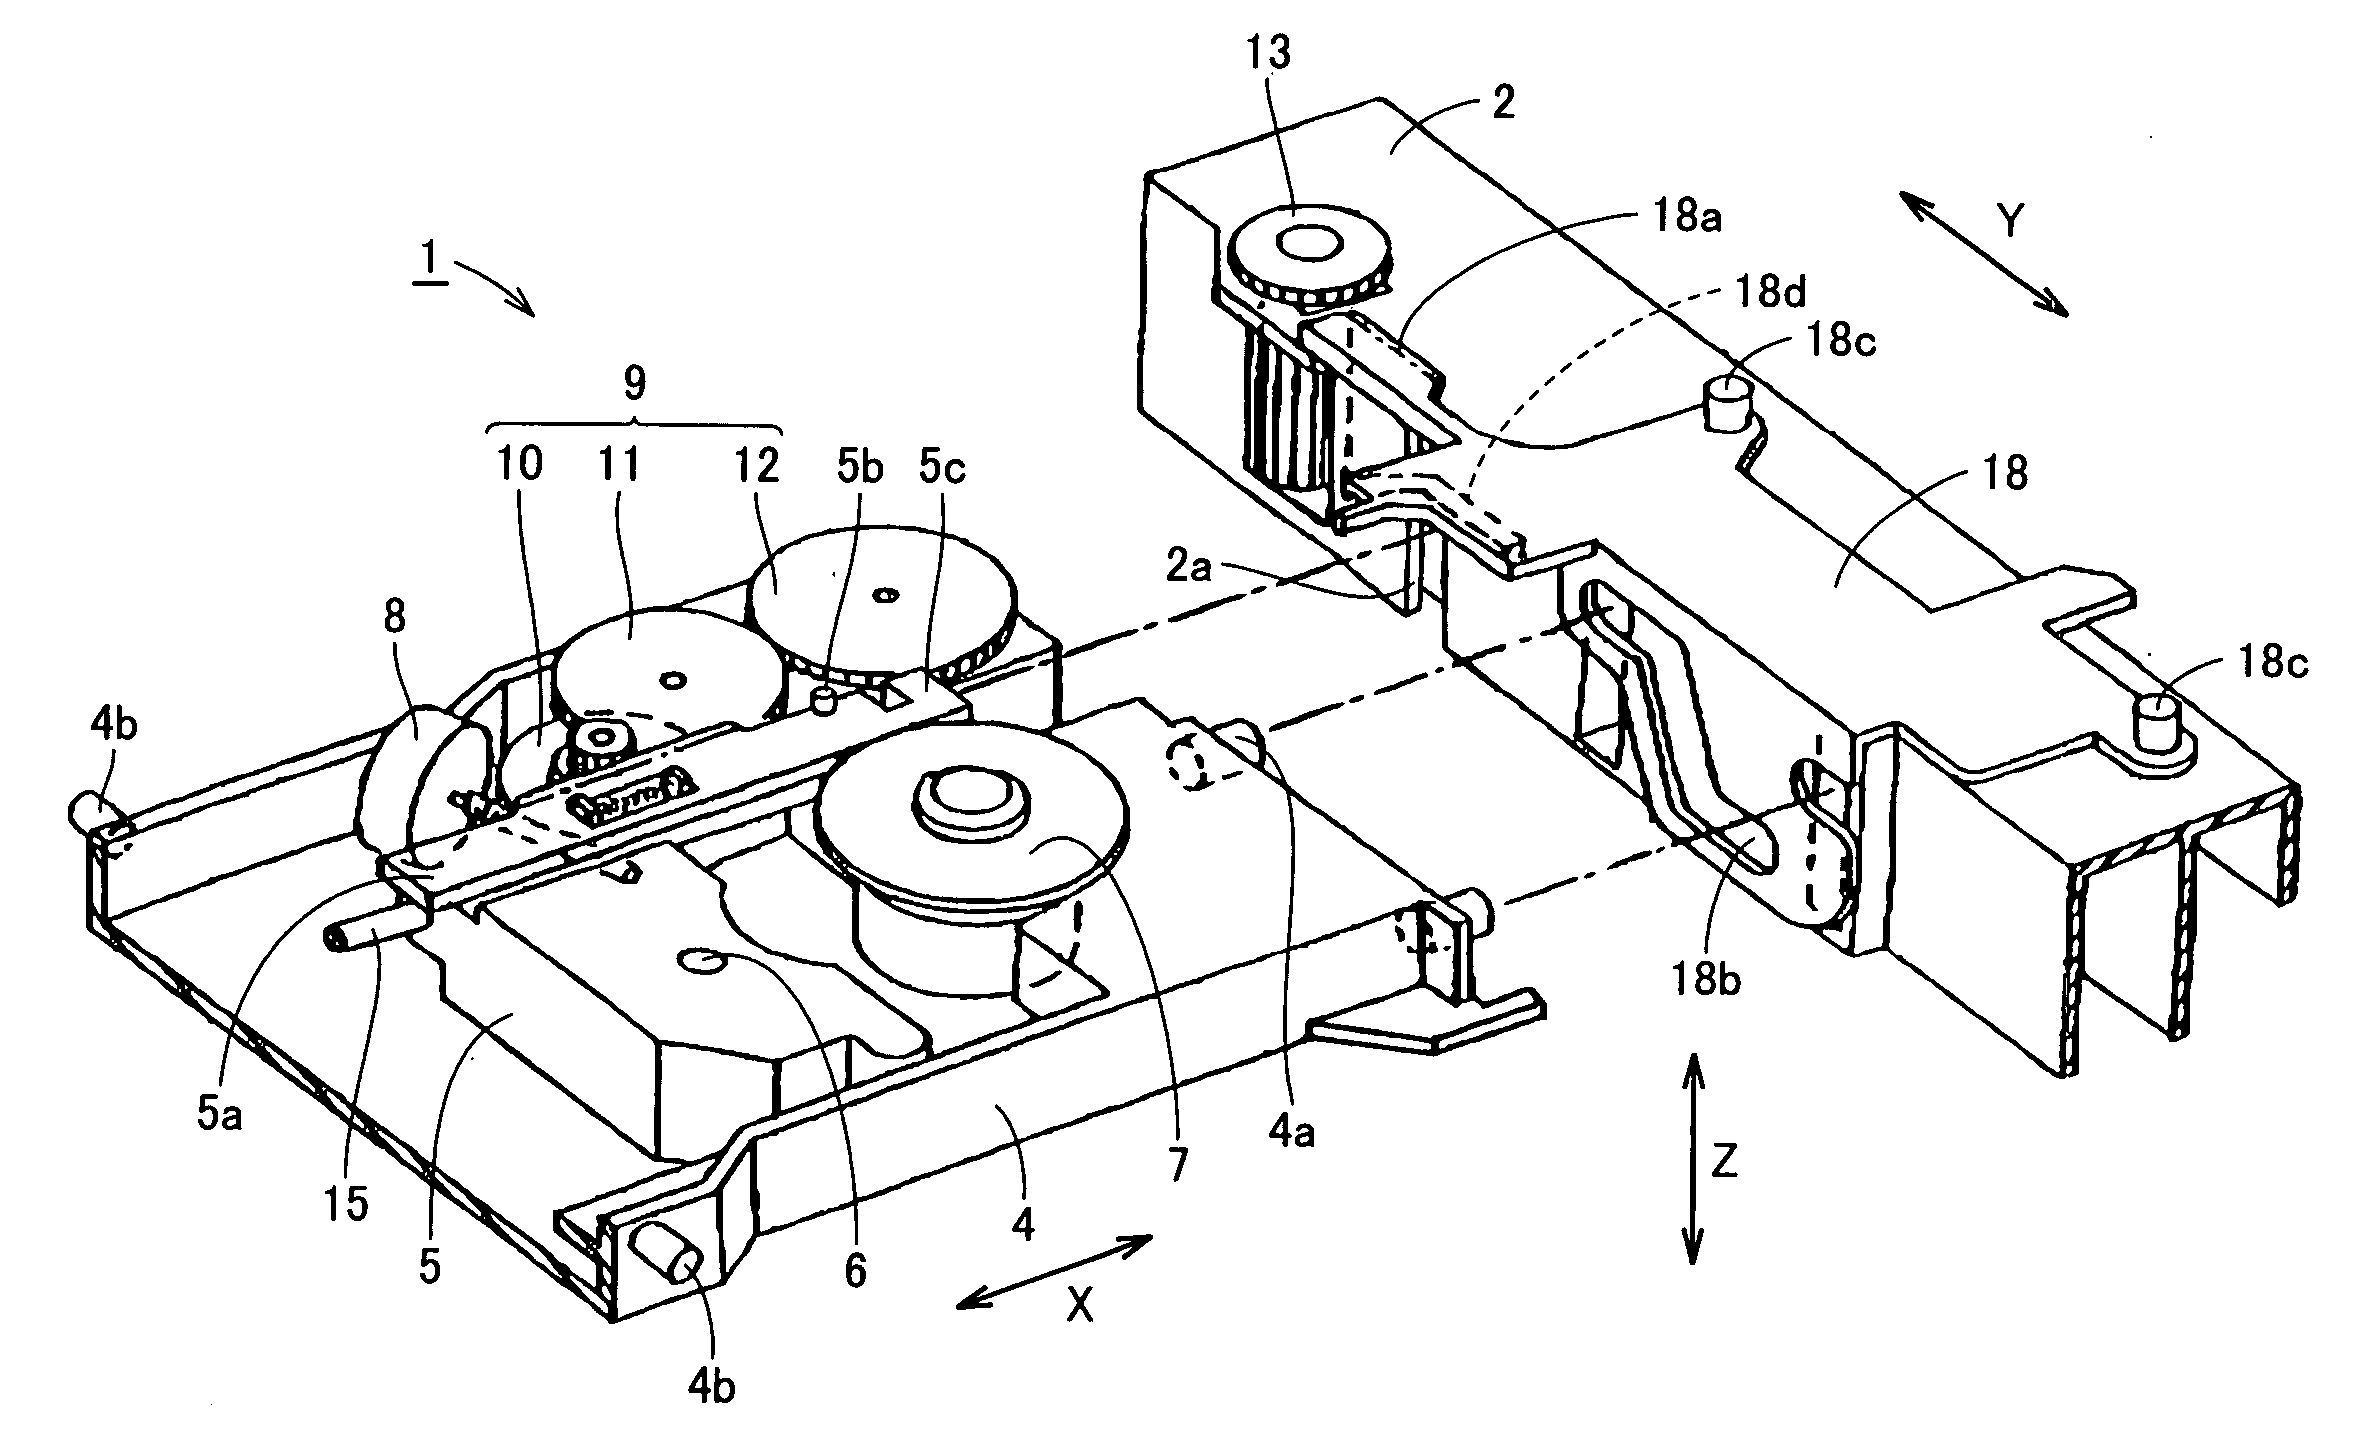 Disc apparatus